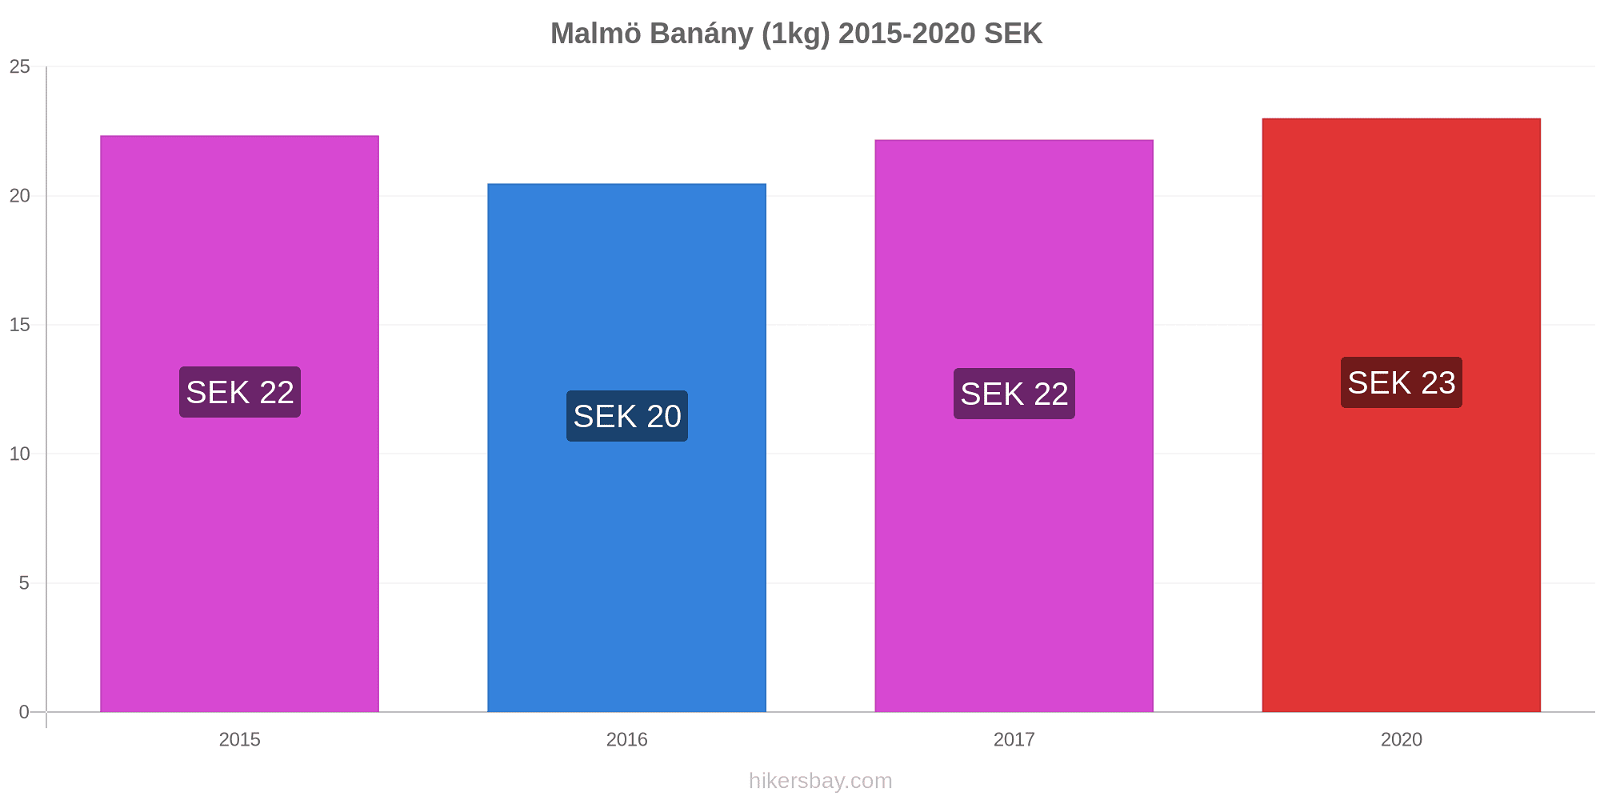 Malmö změny cen Banány (1kg) hikersbay.com